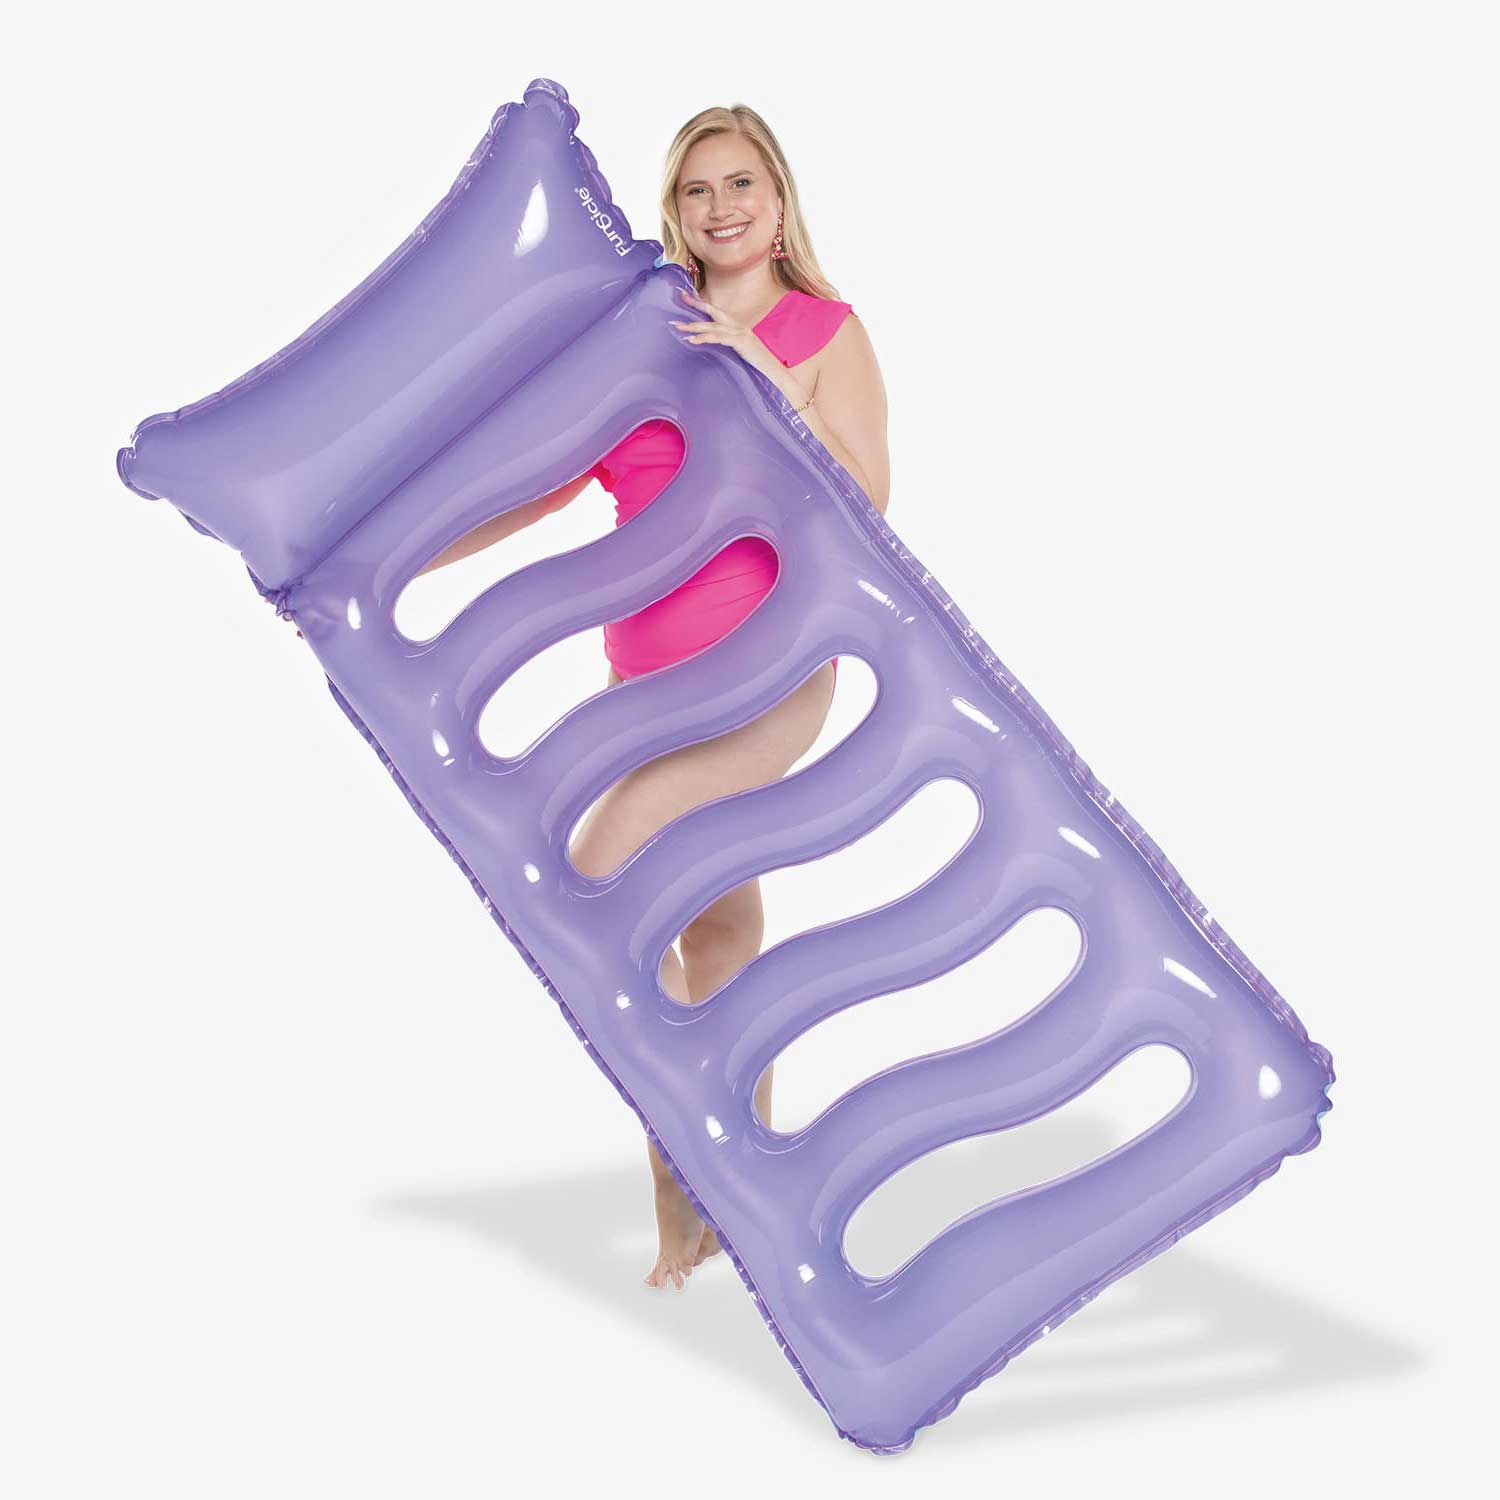 a model holding Funsicle Cool Sunbather Mat